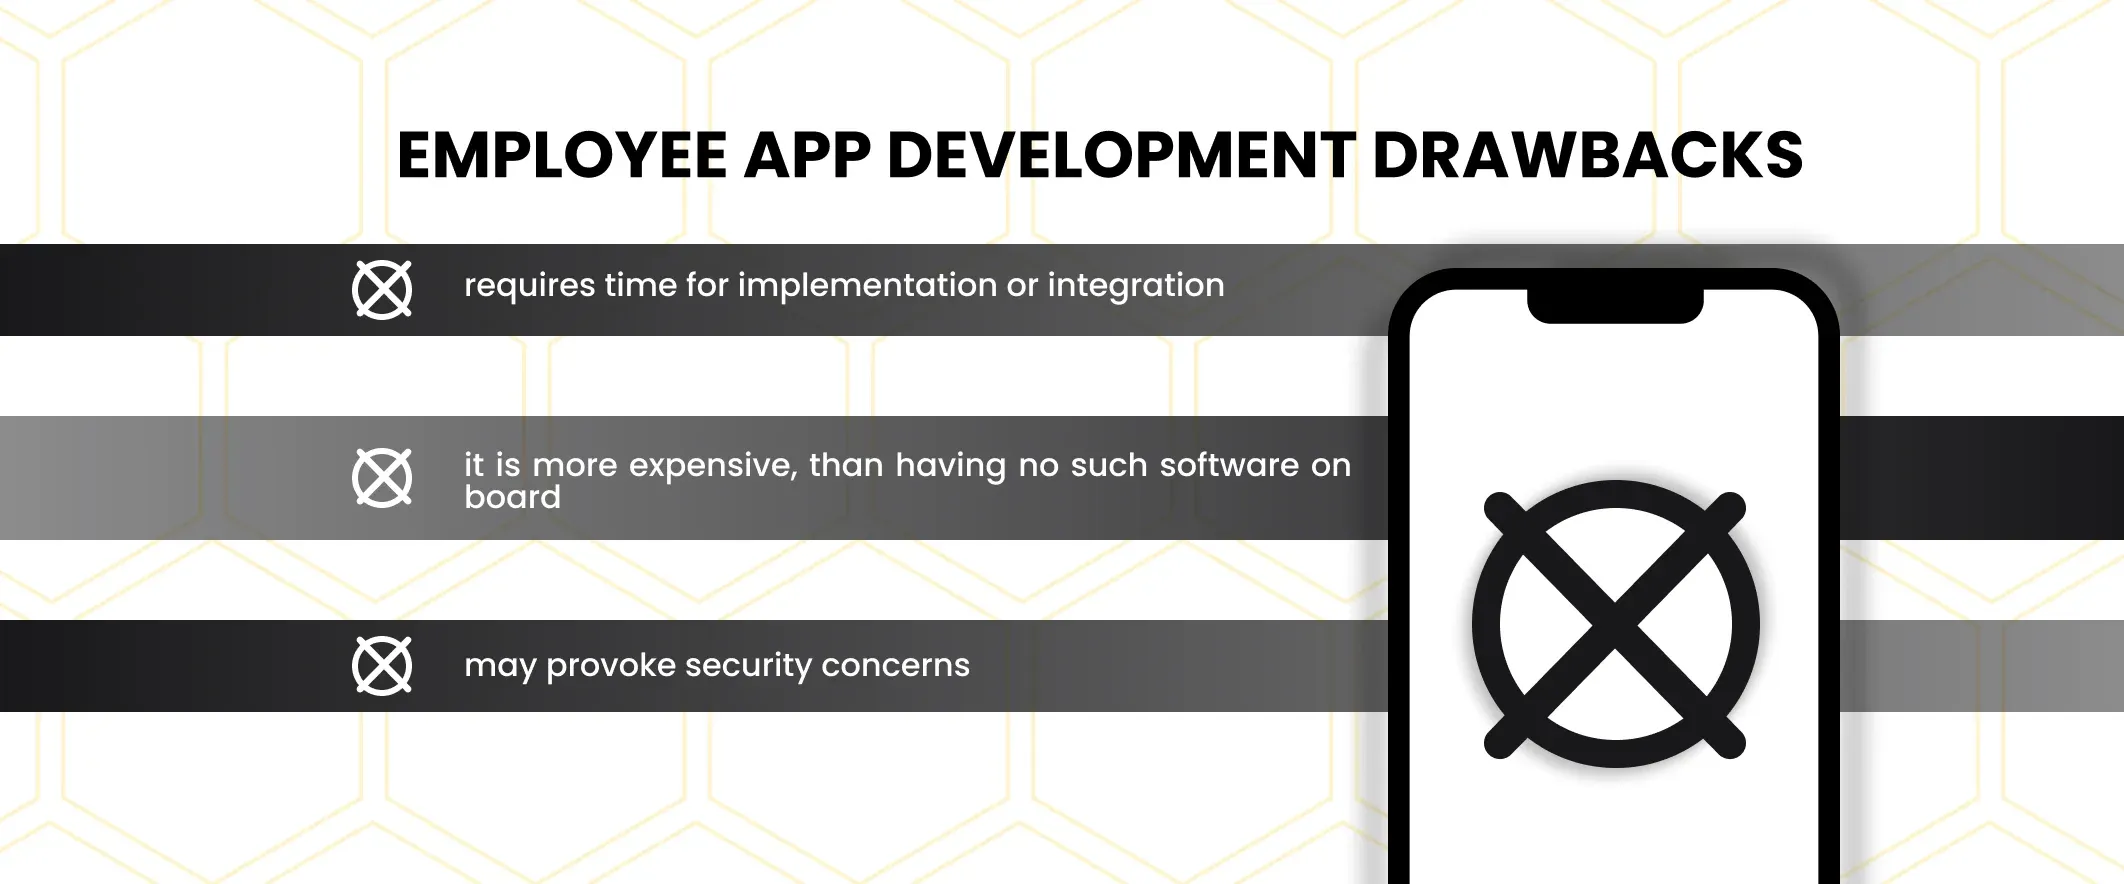 employee app development drawbacks